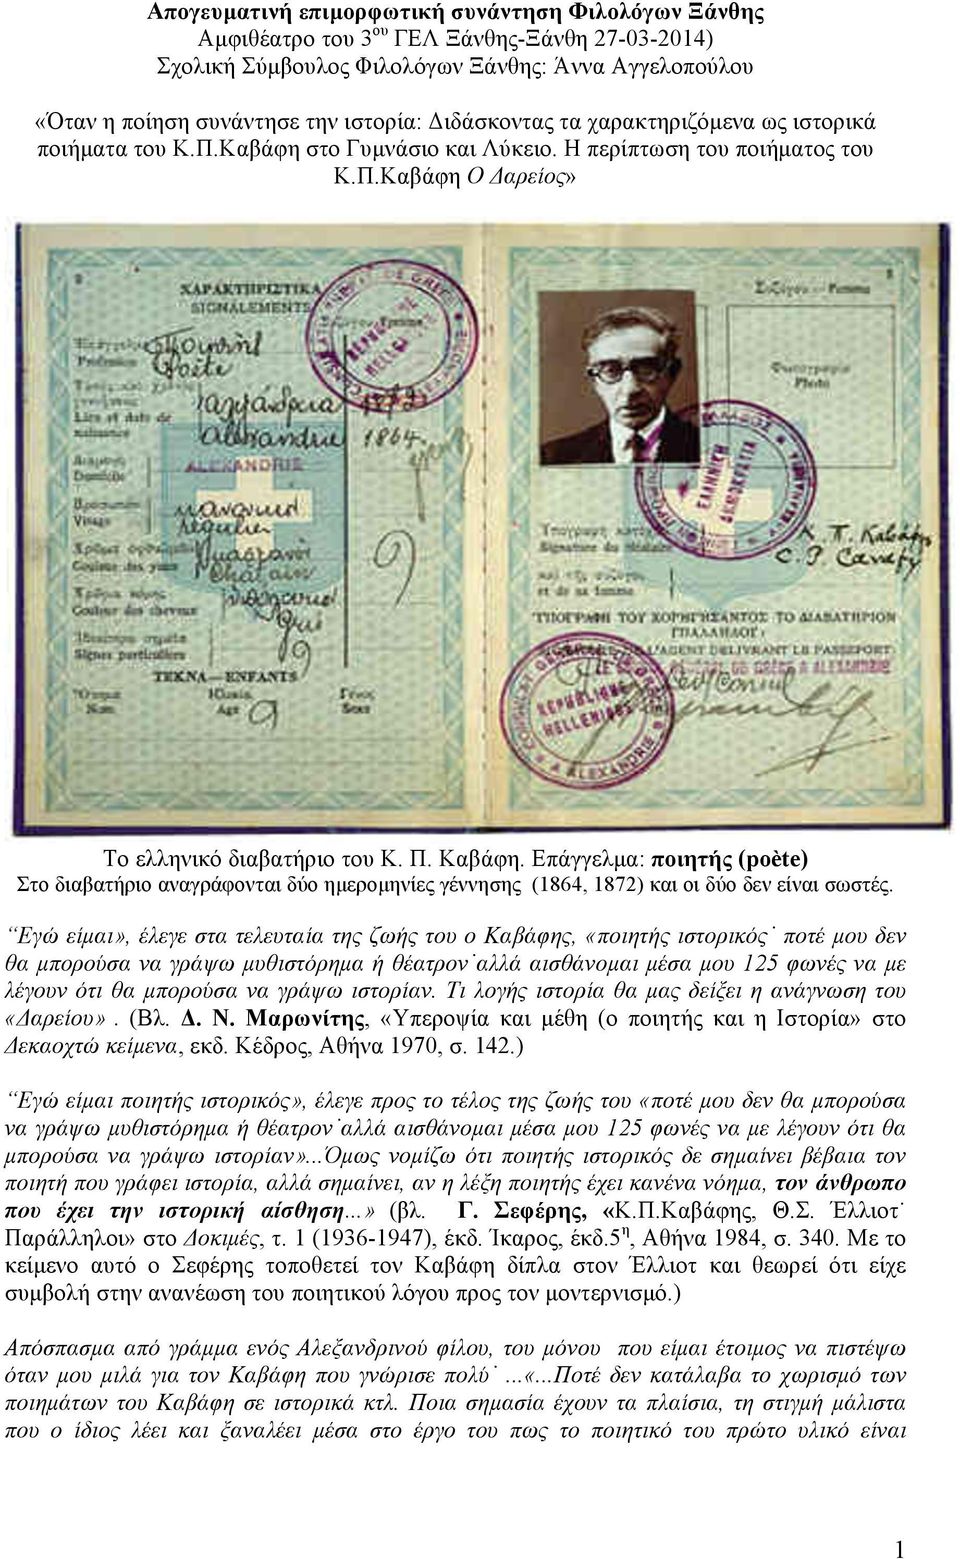 Επάγγελµα: ποιητής (poète) Στο διαβατήριο αναγράφονται δύο ηµεροµηνίες γέννησης (1864, 1872) και οι δύο δεν είναι σωστές.